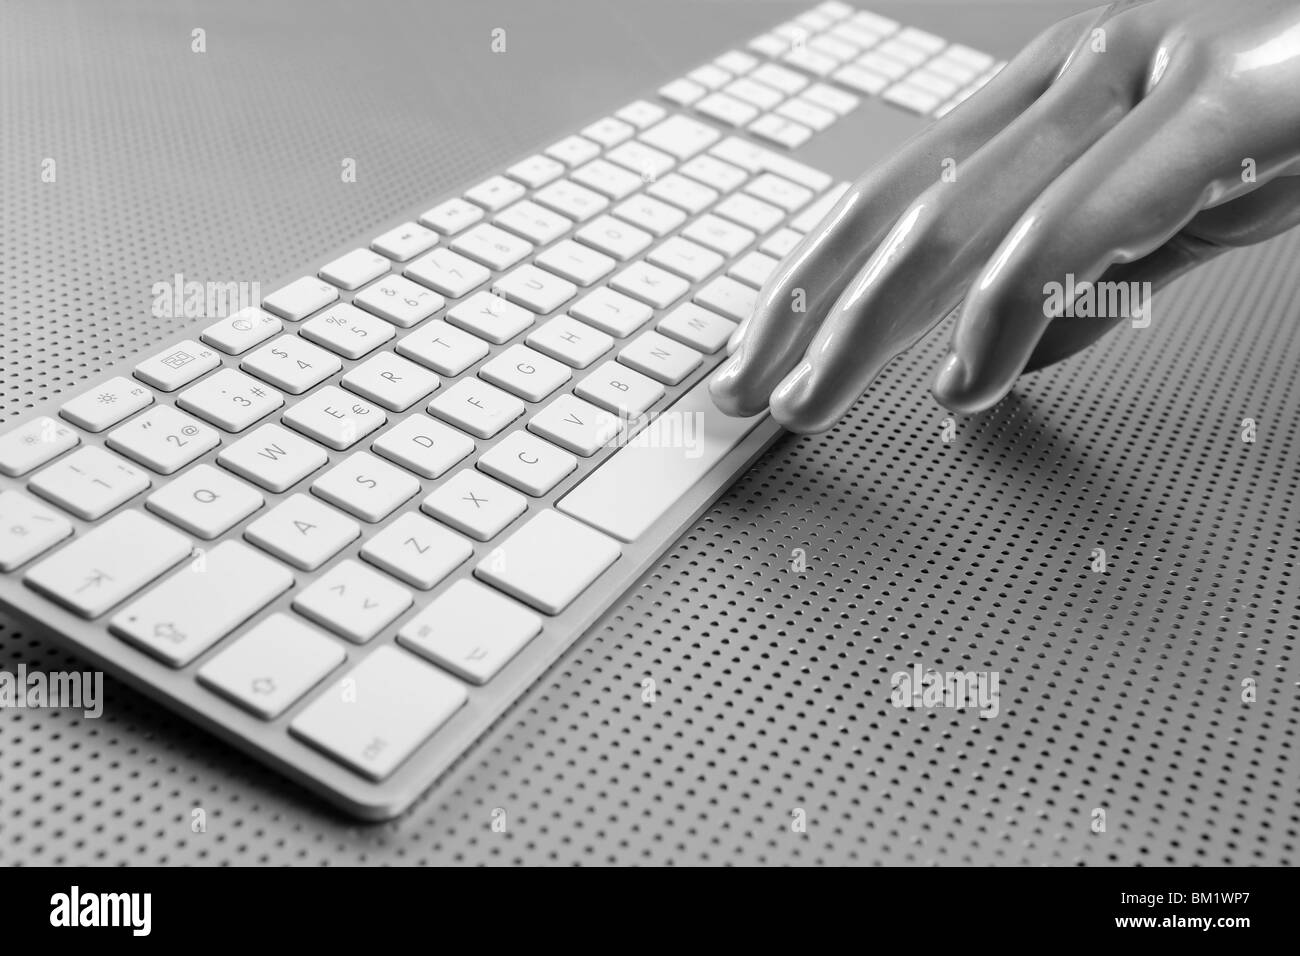 Main gris argent futuriste et clavier de l'ordinateur Banque D'Images